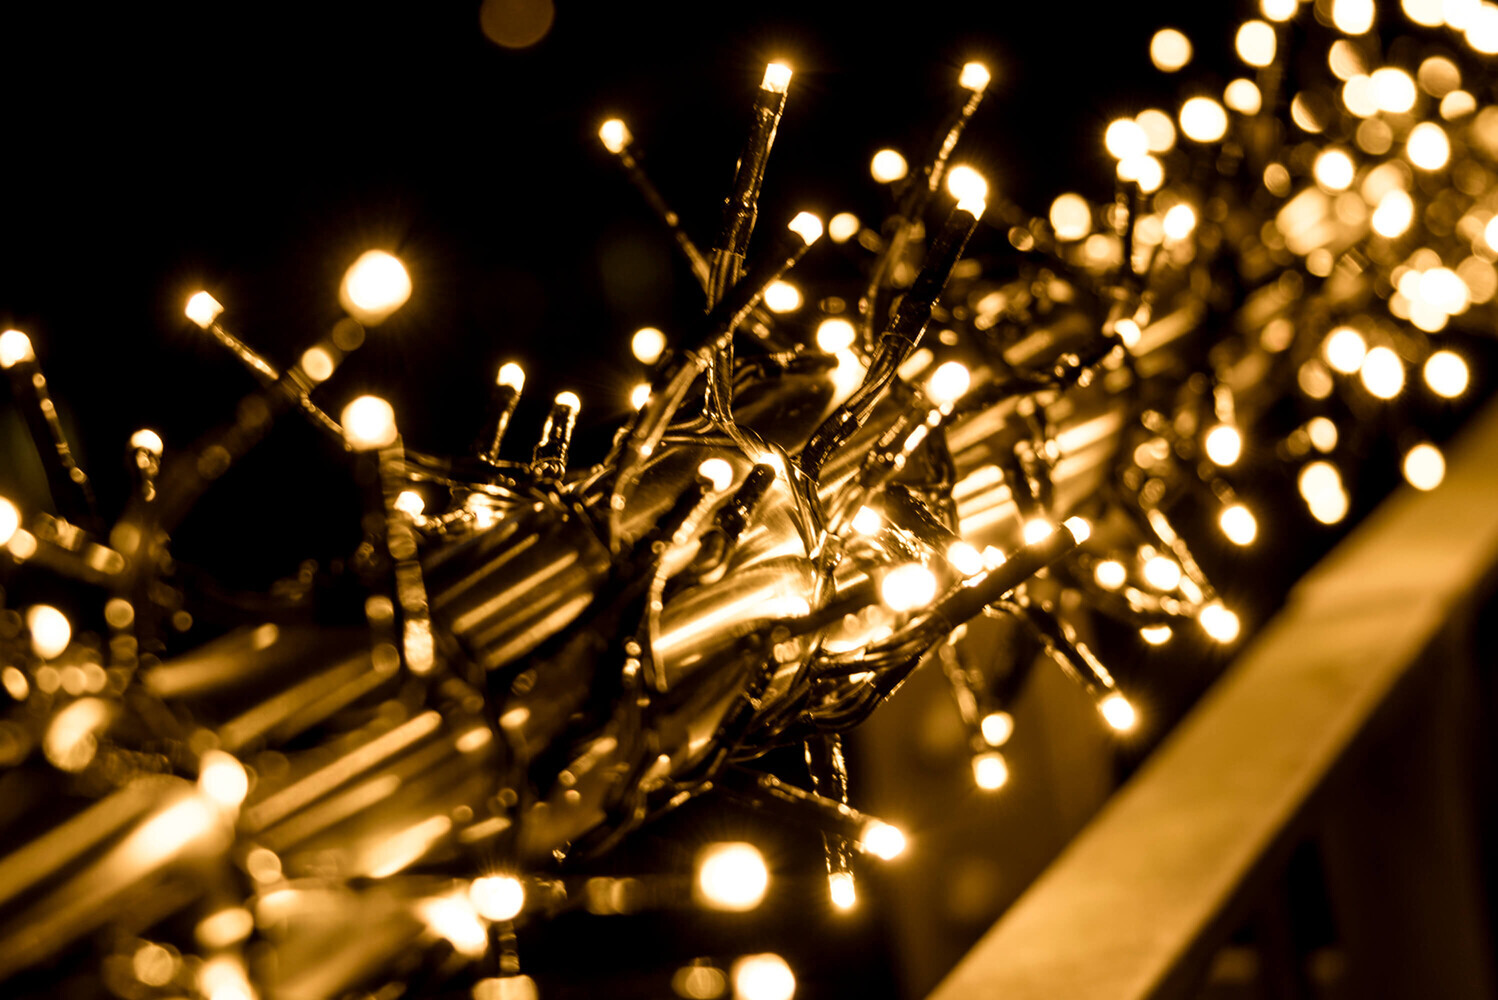 LED Universum LED Büschellichterkette warmweiß von LED Universum, ca 7m Länge, 480LEDs, 3m Zuleitung, Cluster Lichterkette, Stimmungsbeleuchtung spritzwassergeschützt für innen und außen, Weihnachten, Feier, Wohnzimmer, Garten, Terasse